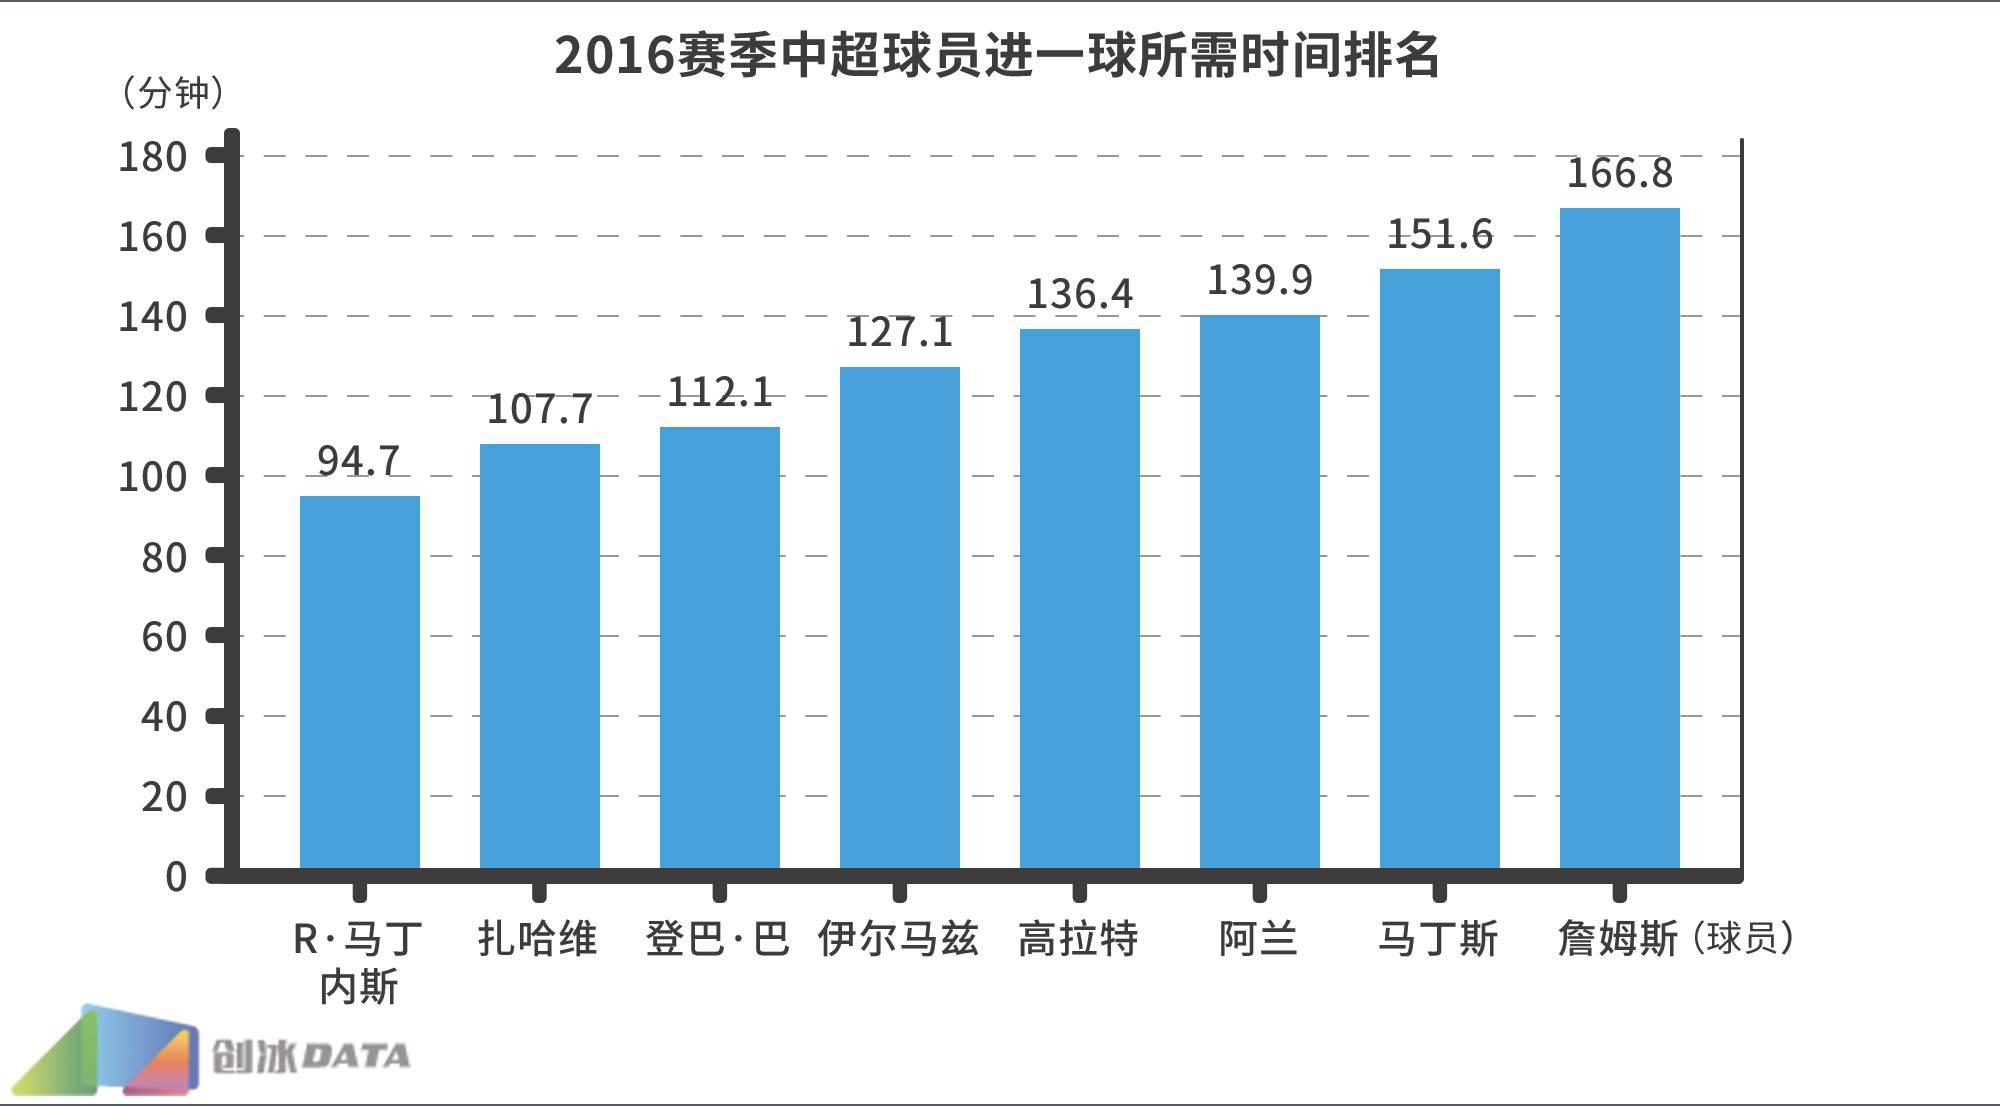 2016年武磊中超进球数 2016中超大数据第一弹(13)